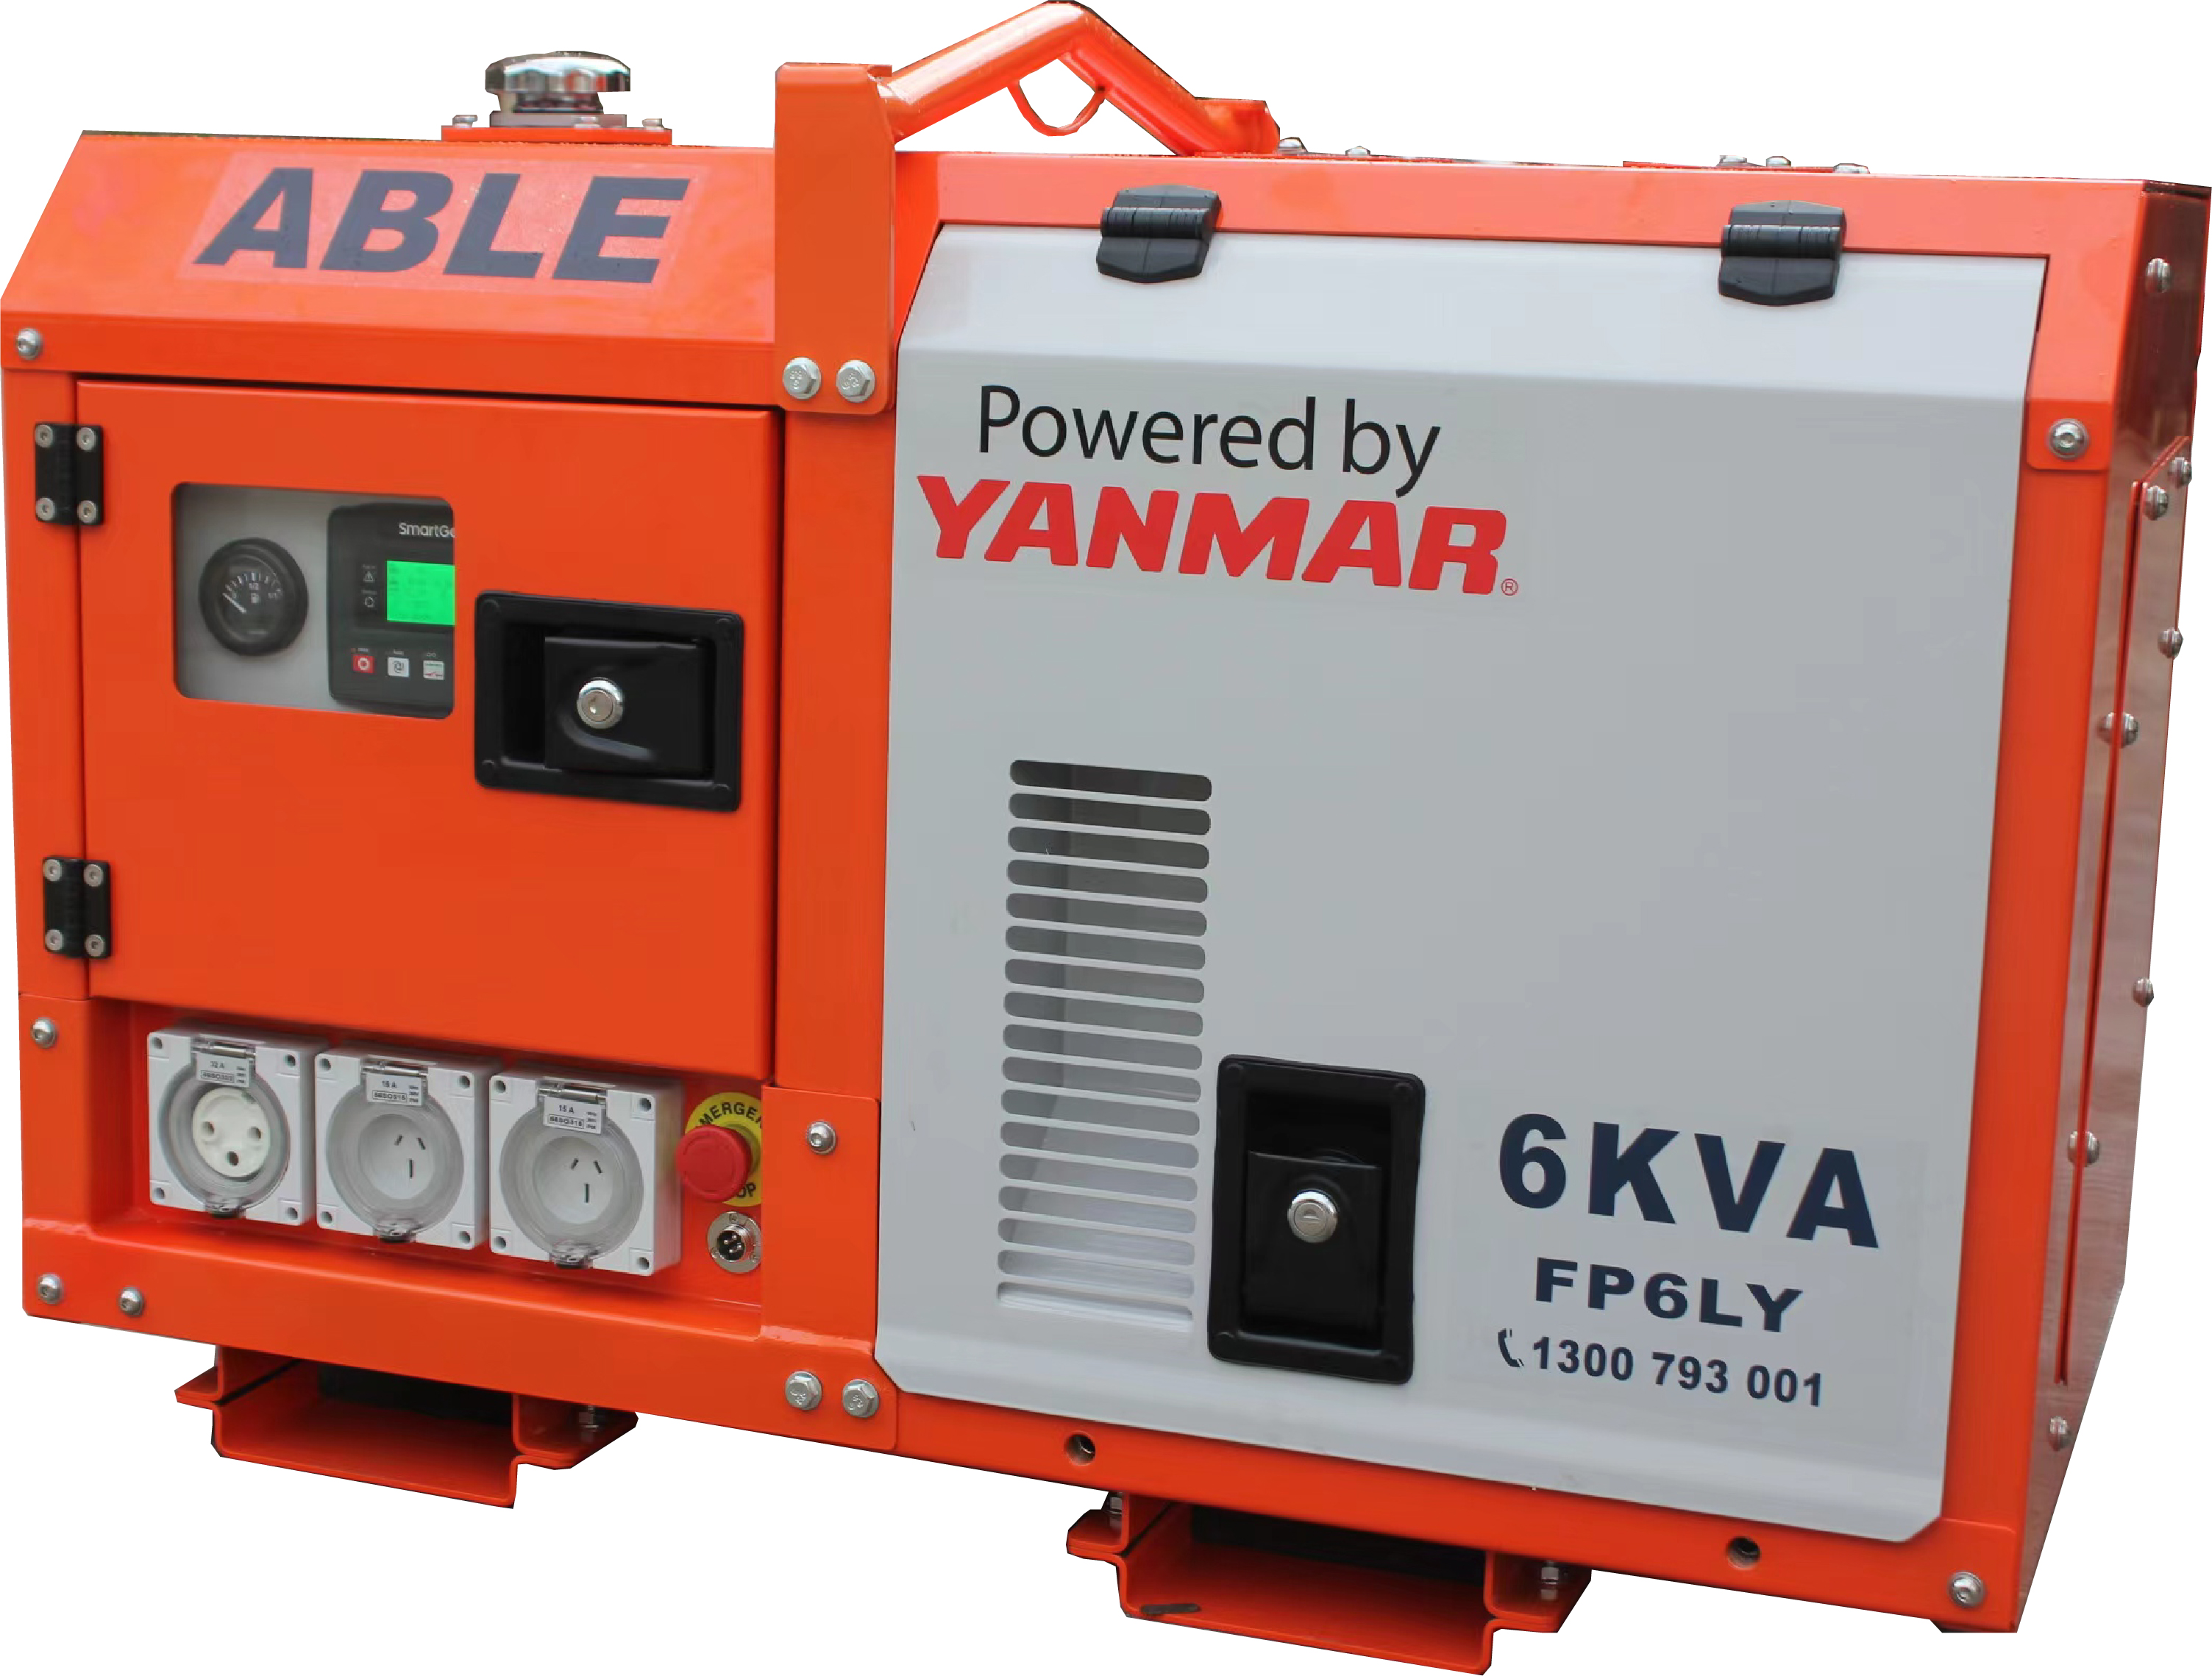 6 kVA Generator 240V - LOW PROFILE - YANMAR Powered